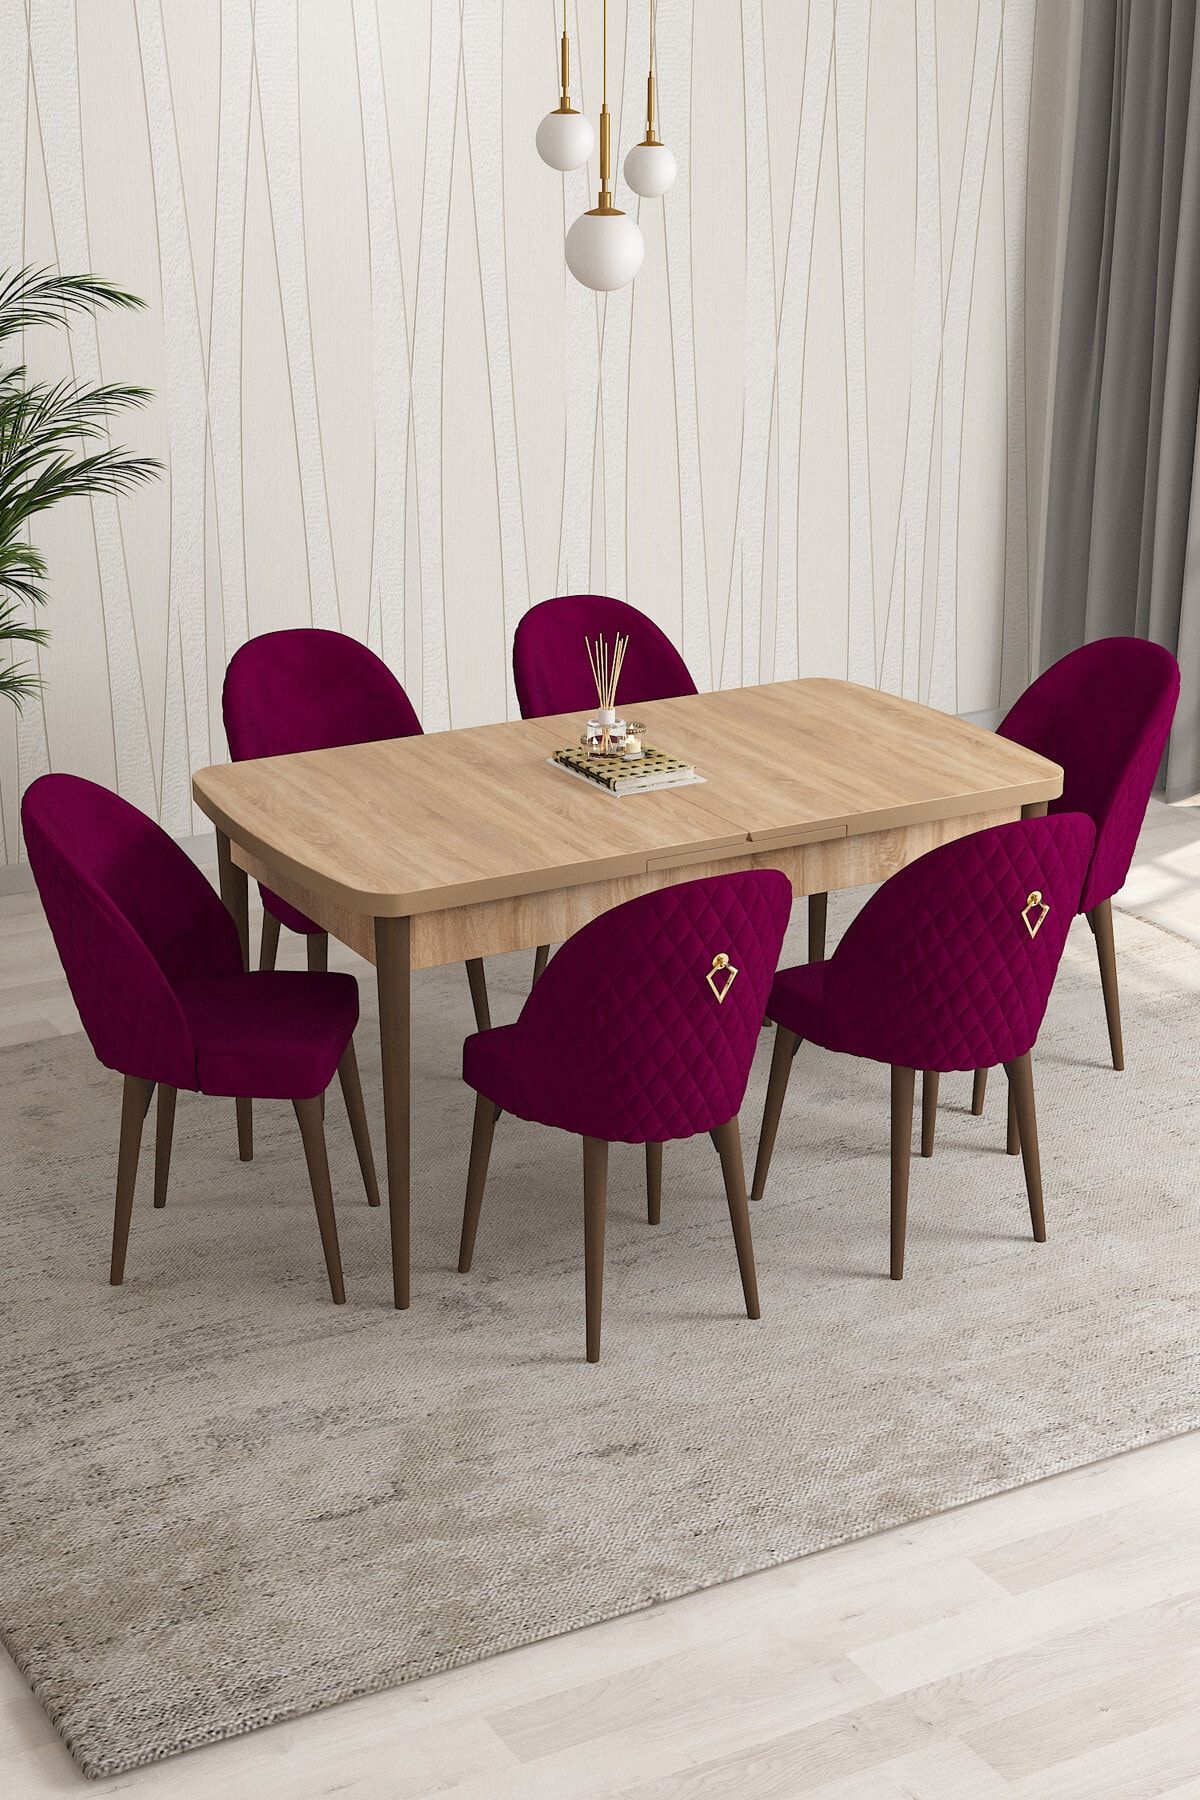 Rovena Modica Meşe Desen 80x132 Açılabilir Yemek Masası Takımı 6 Adet Sandalye